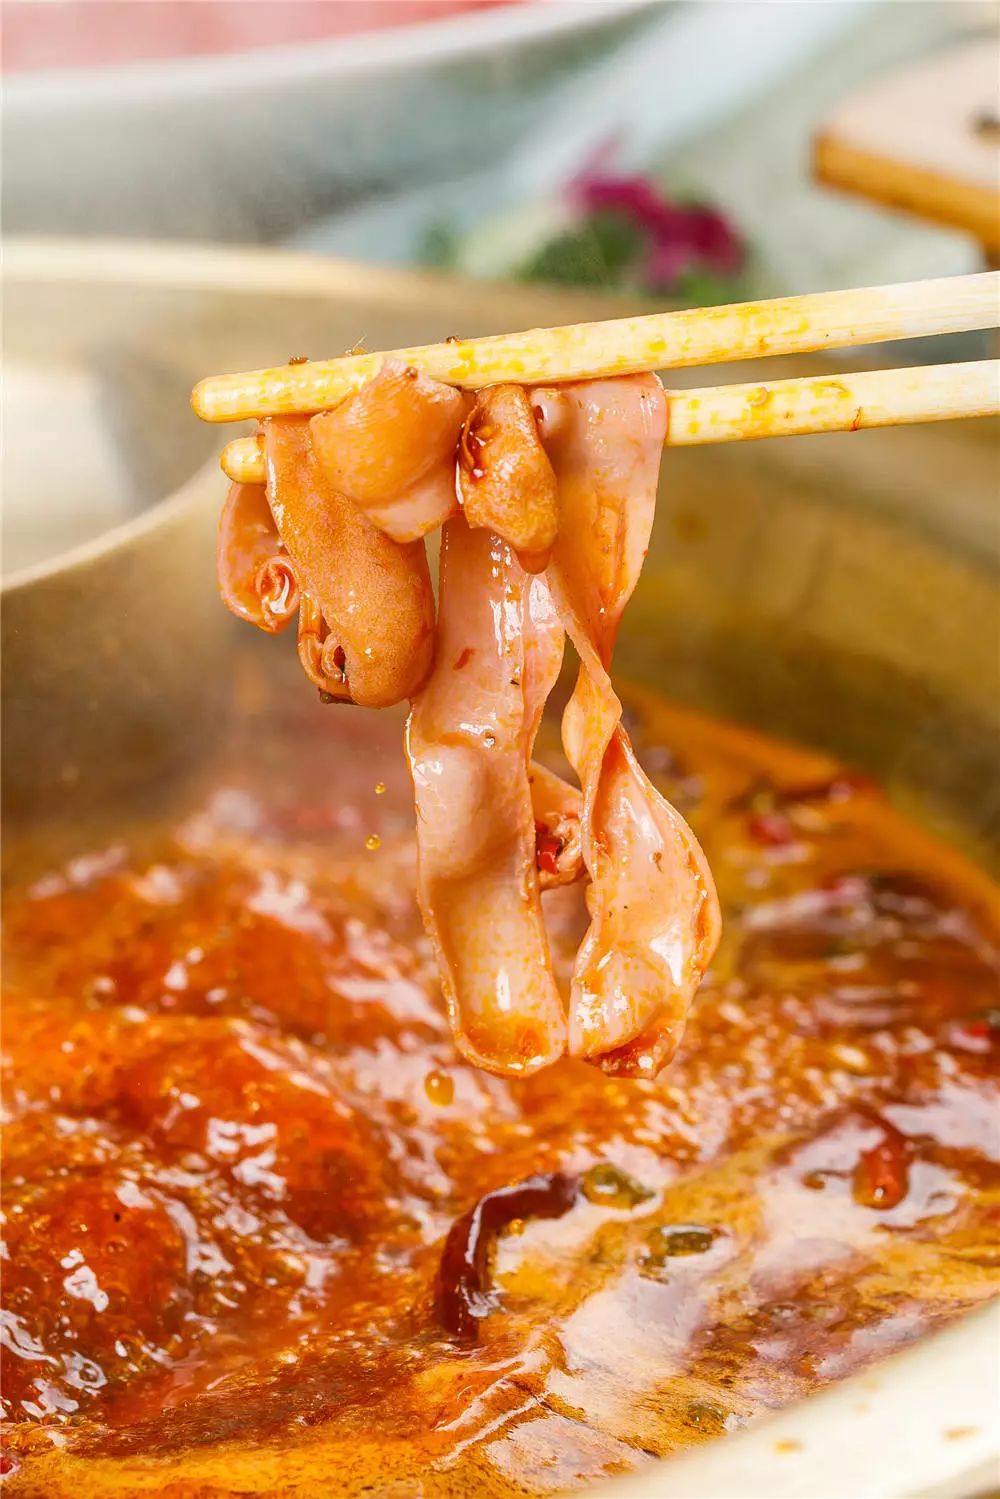 鸭肠,会慢慢舒展卷曲,裹着浓浓的红油,吃在嘴里鲜脆可口, 重庆 火锅必